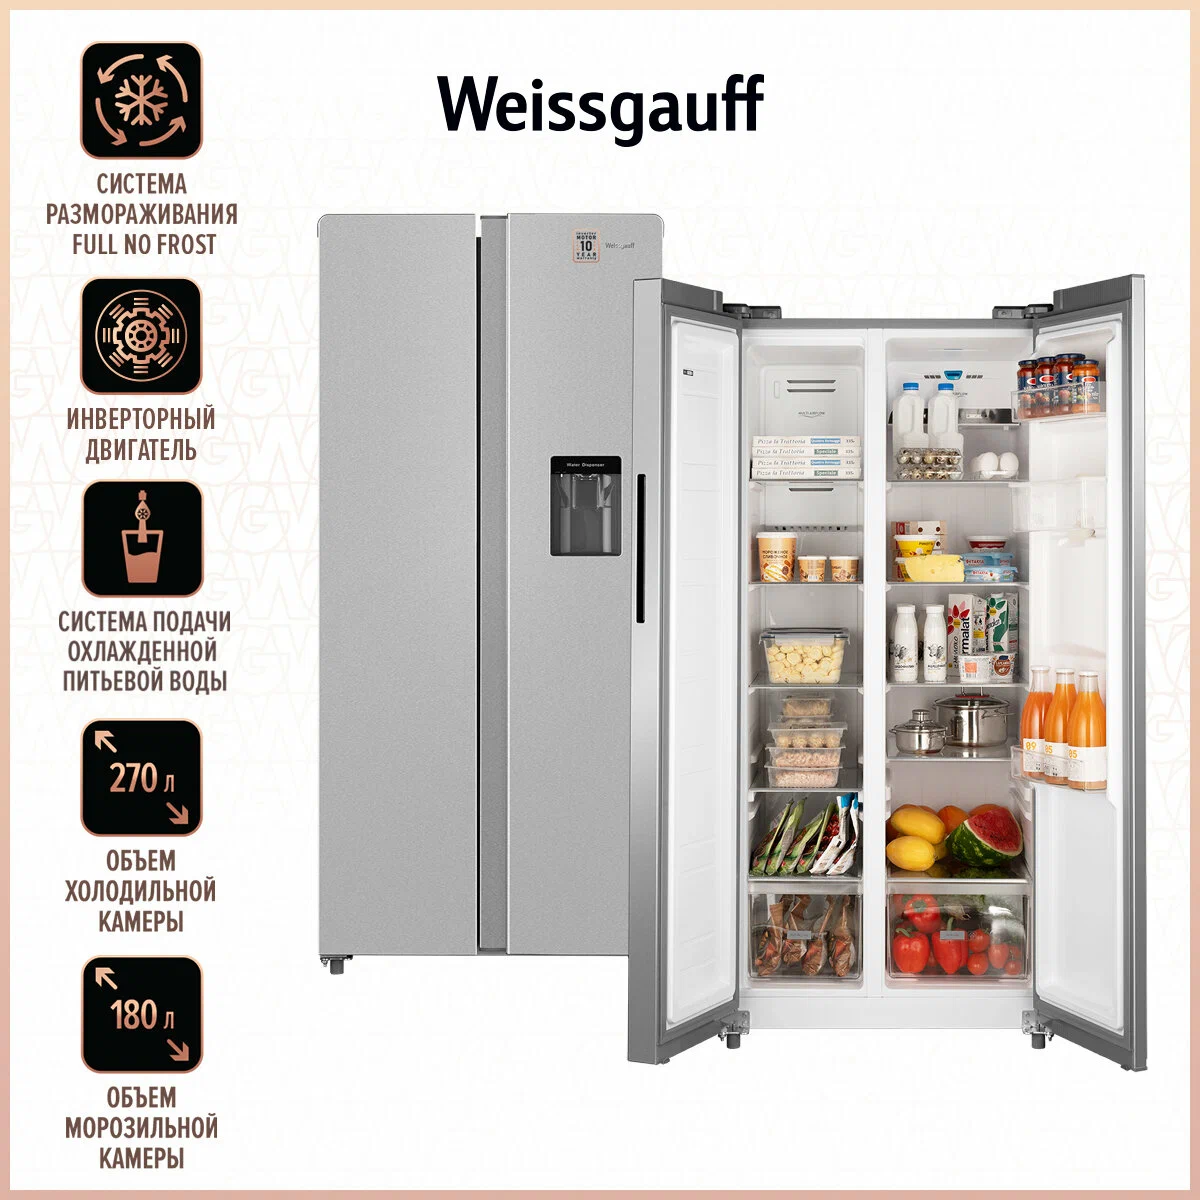 Холодильник Weissgauff WSBS 600 X серебристый холодильник side by side weissgauff wsbs 692 nfw inverter ice maker